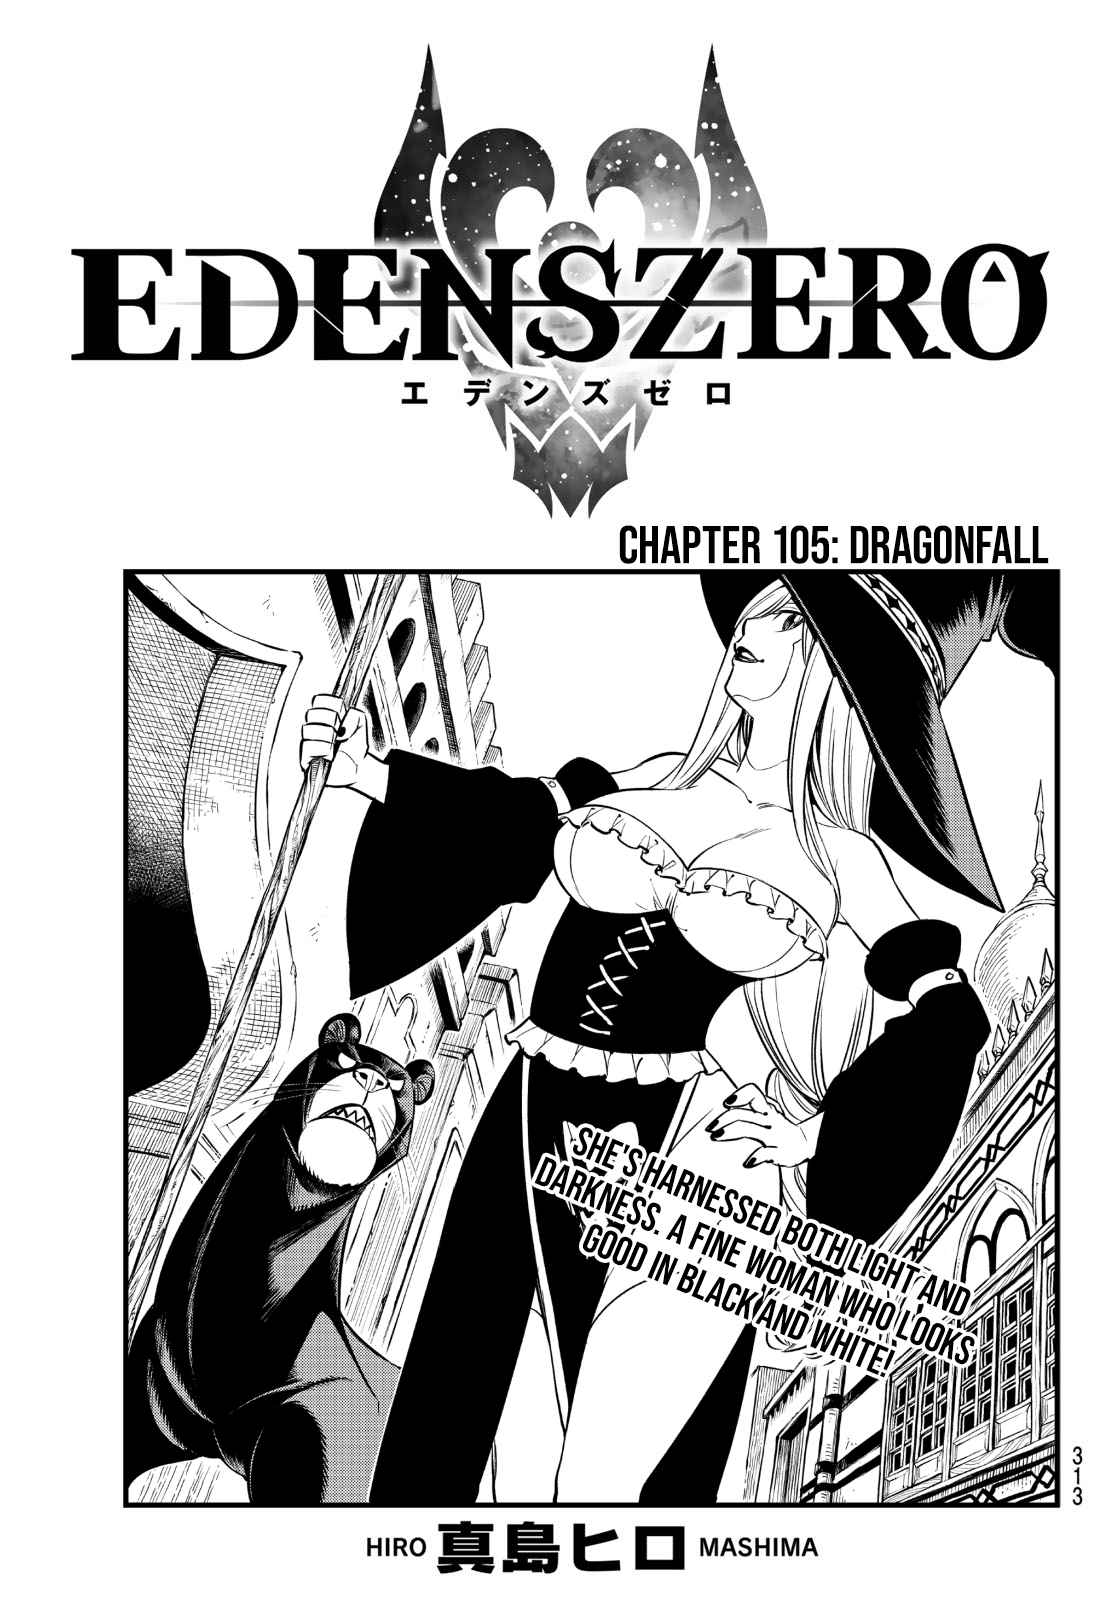 Edens Zero Ch. 105 Dragonfall